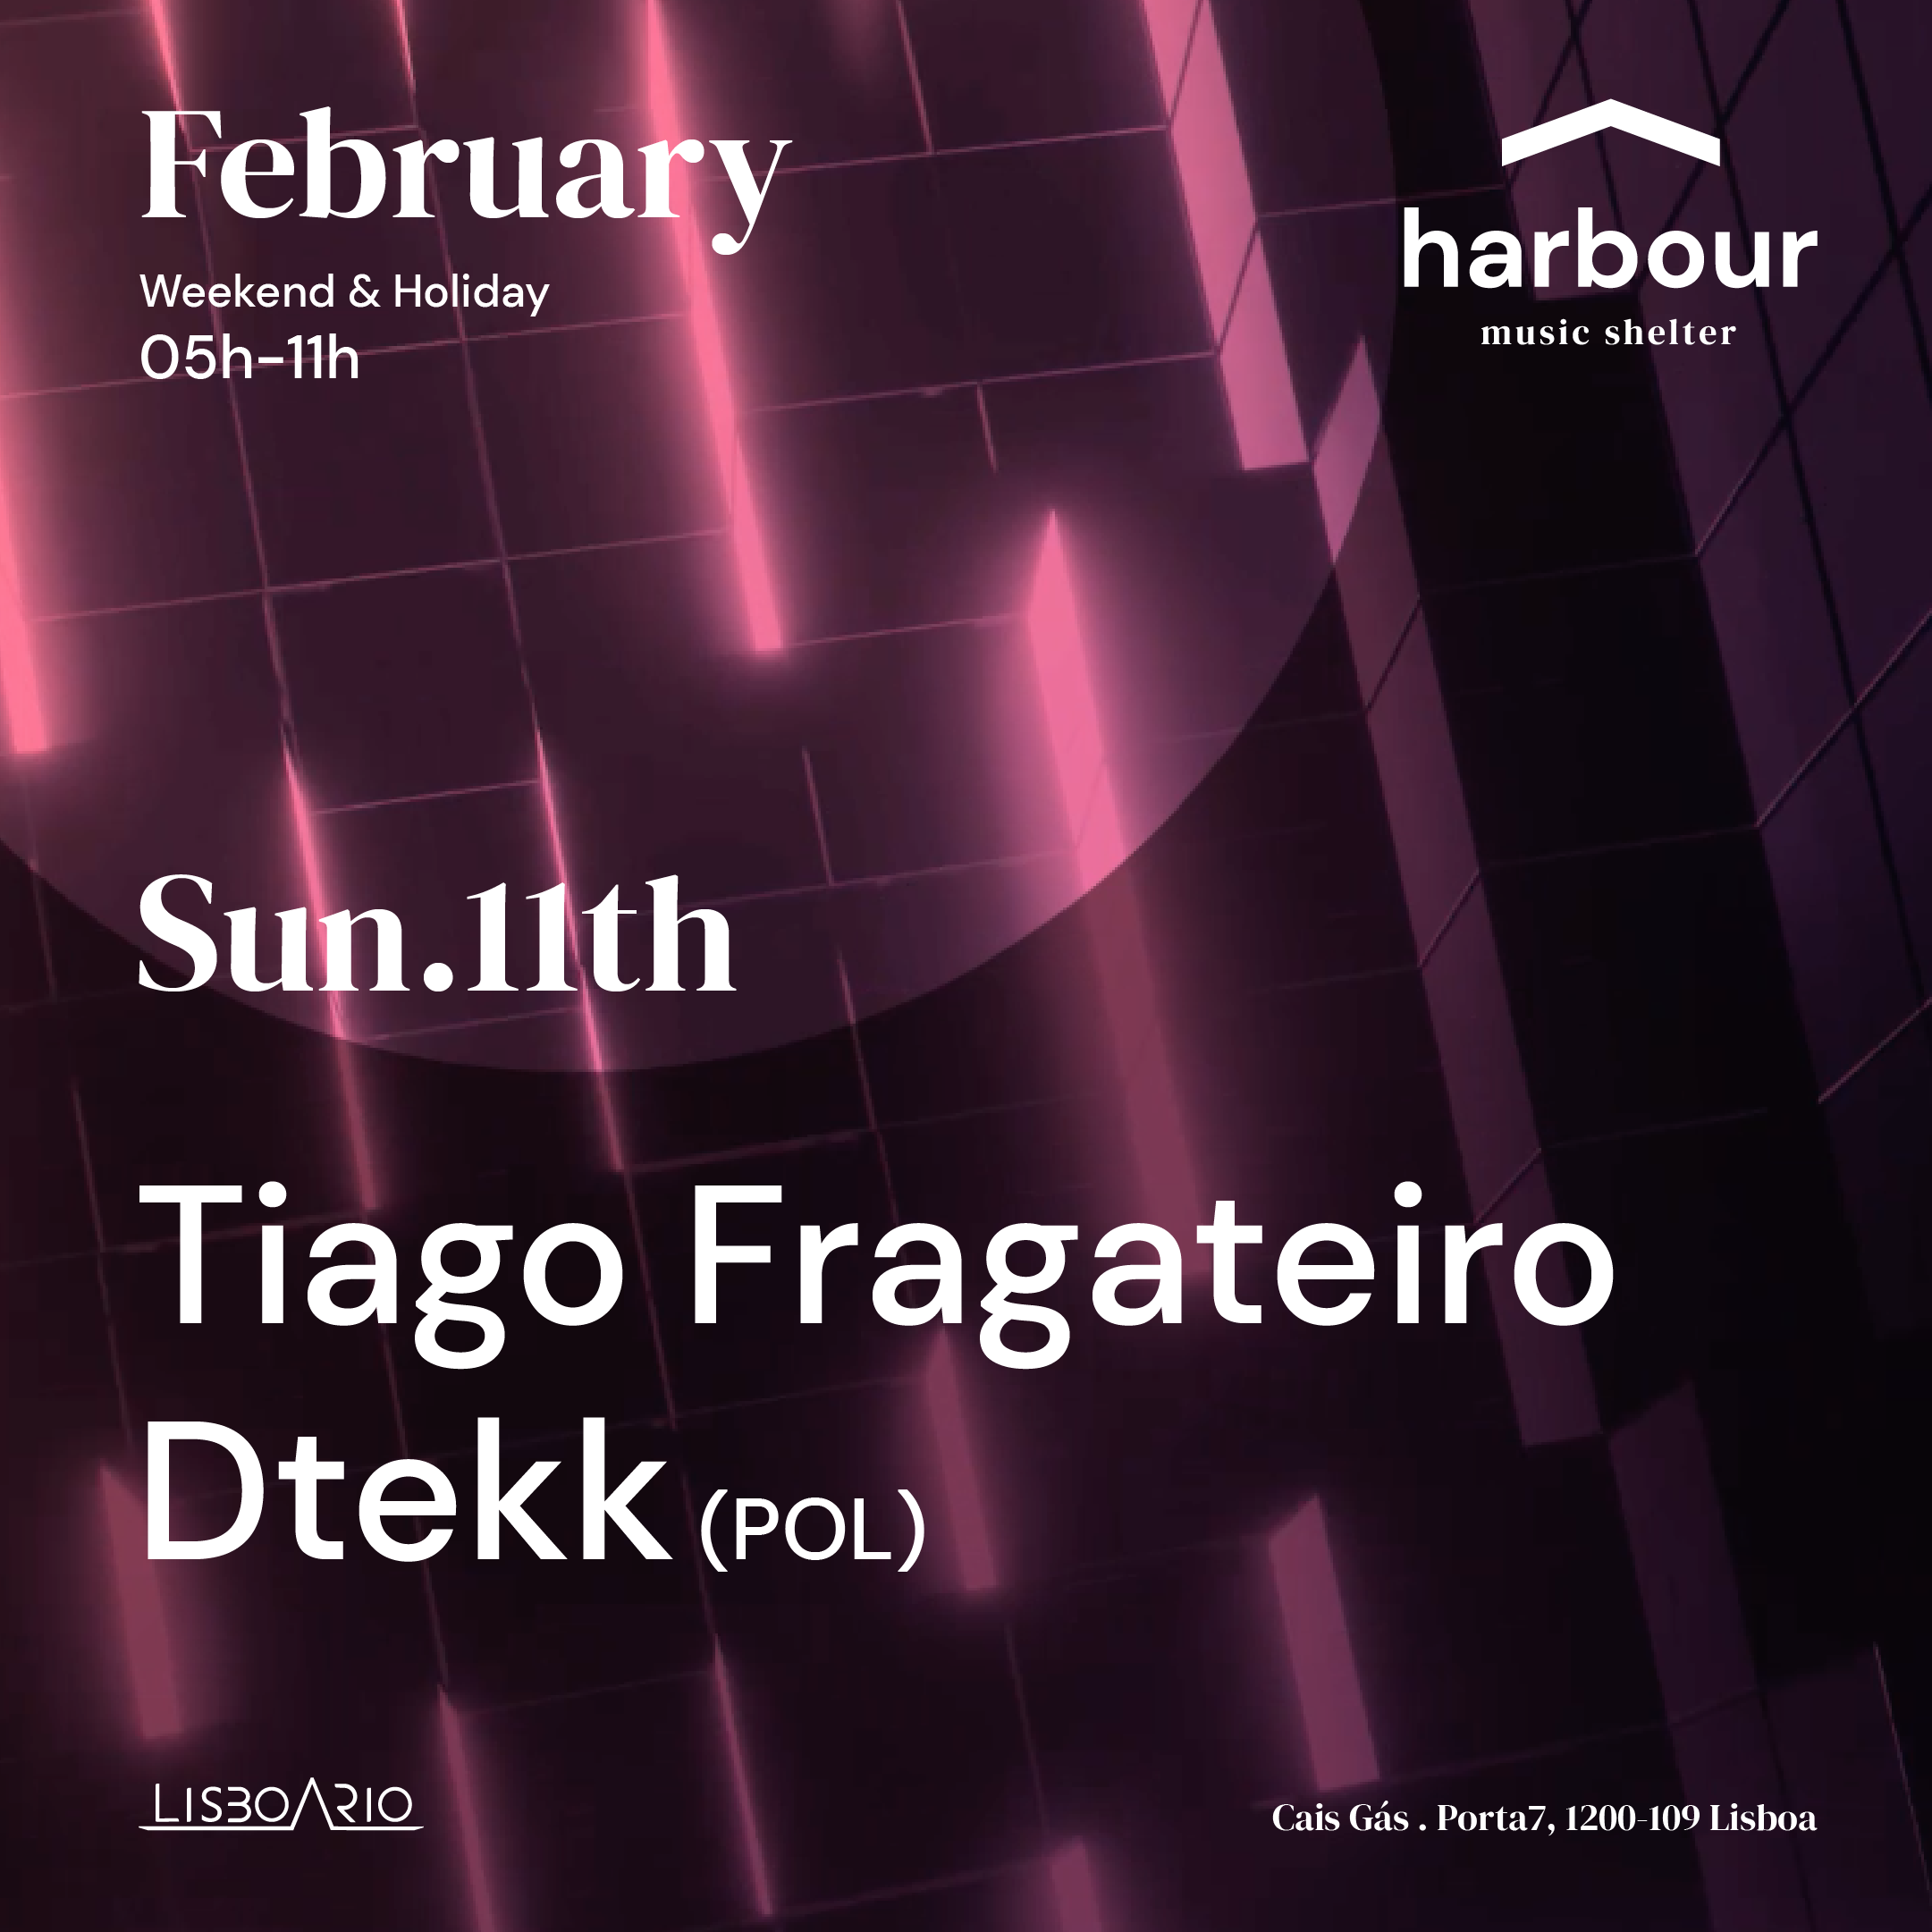 Harbour // Tiago Fragateiro + dtekk (Pol) - フライヤー表